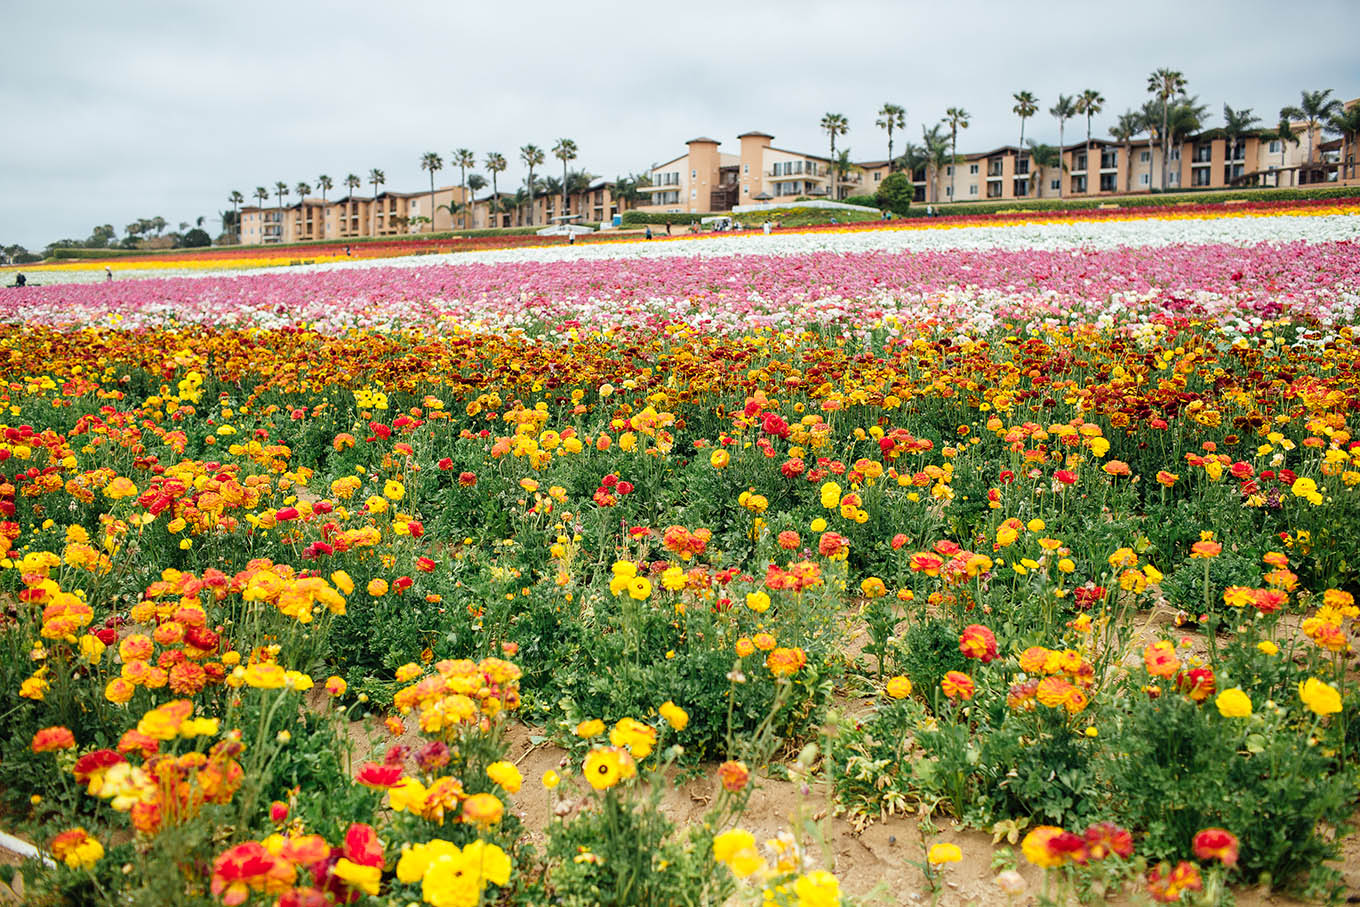 Prettiest Flower Field in the US